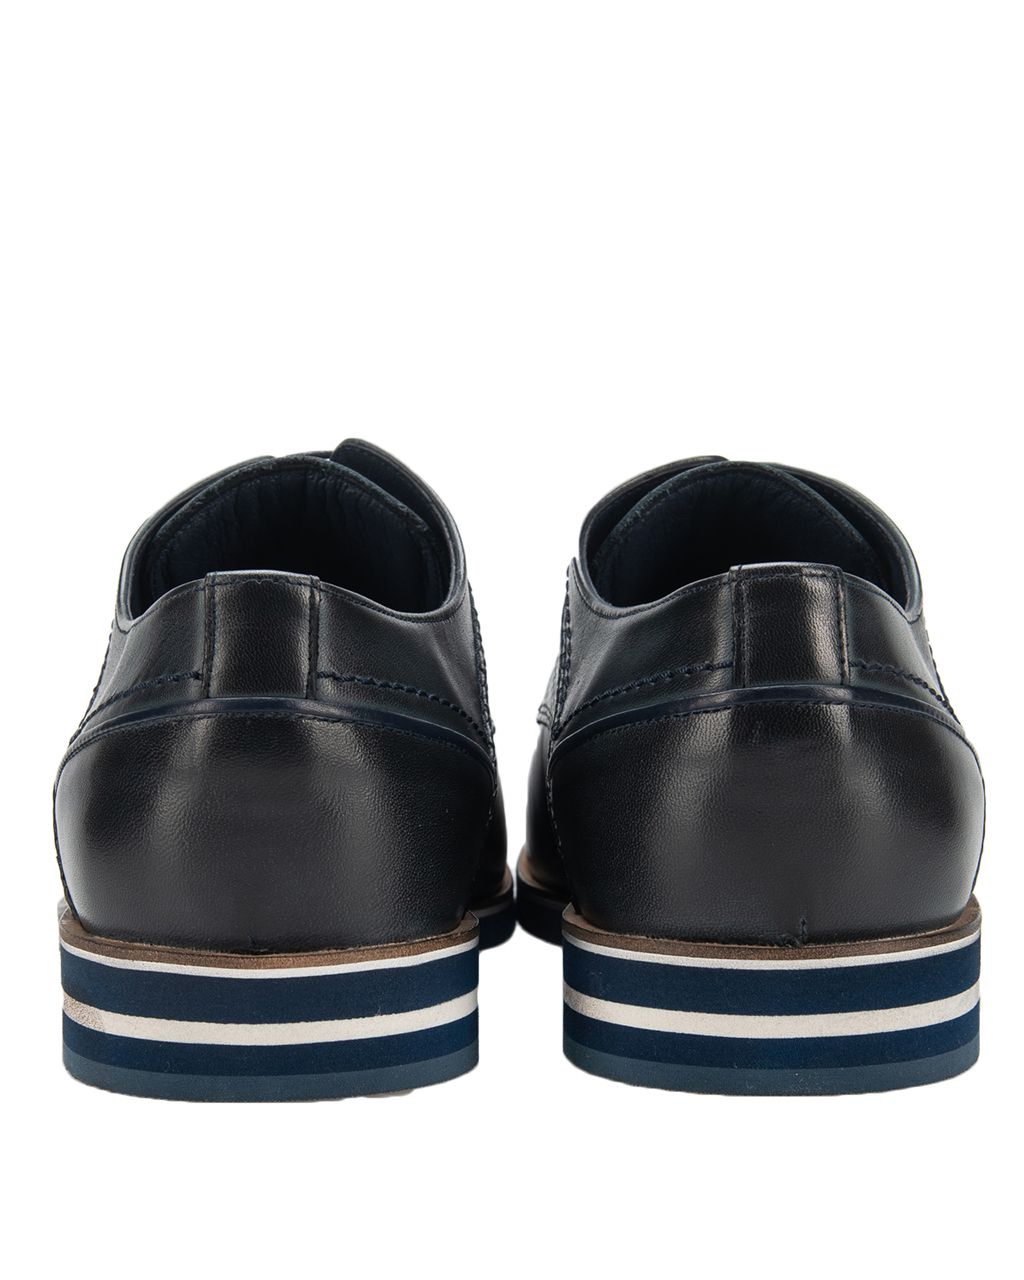 Recall Geklede schoenen Donkerblauw 057605-002-40